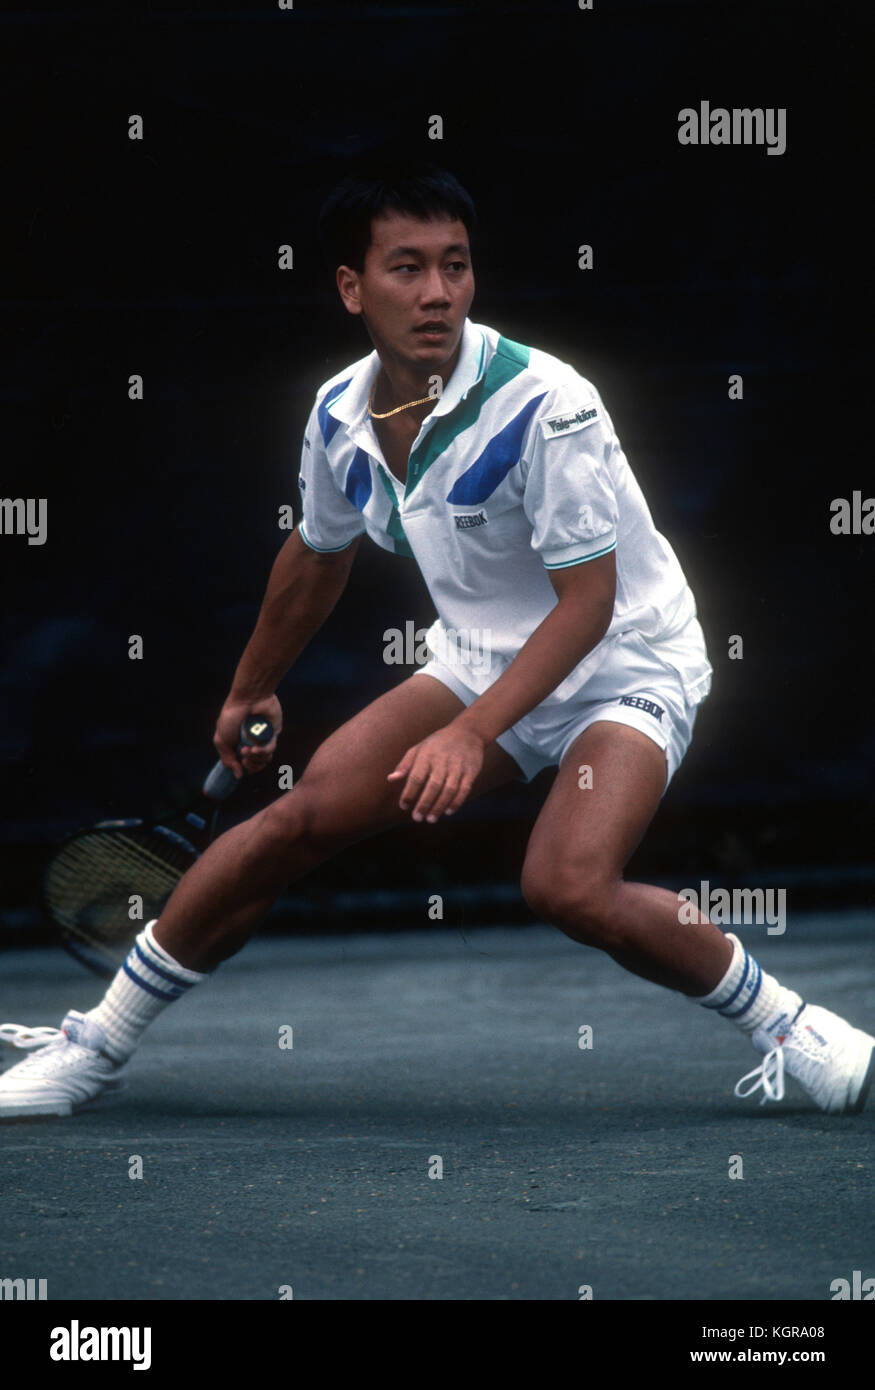 Michael Chang, in welchem der Felder die Kugel nach weit für einen forheand während eines Spiels bei der Wm Tennis Event in Forest Hills, New York, 1989 gezogen. Stockfoto